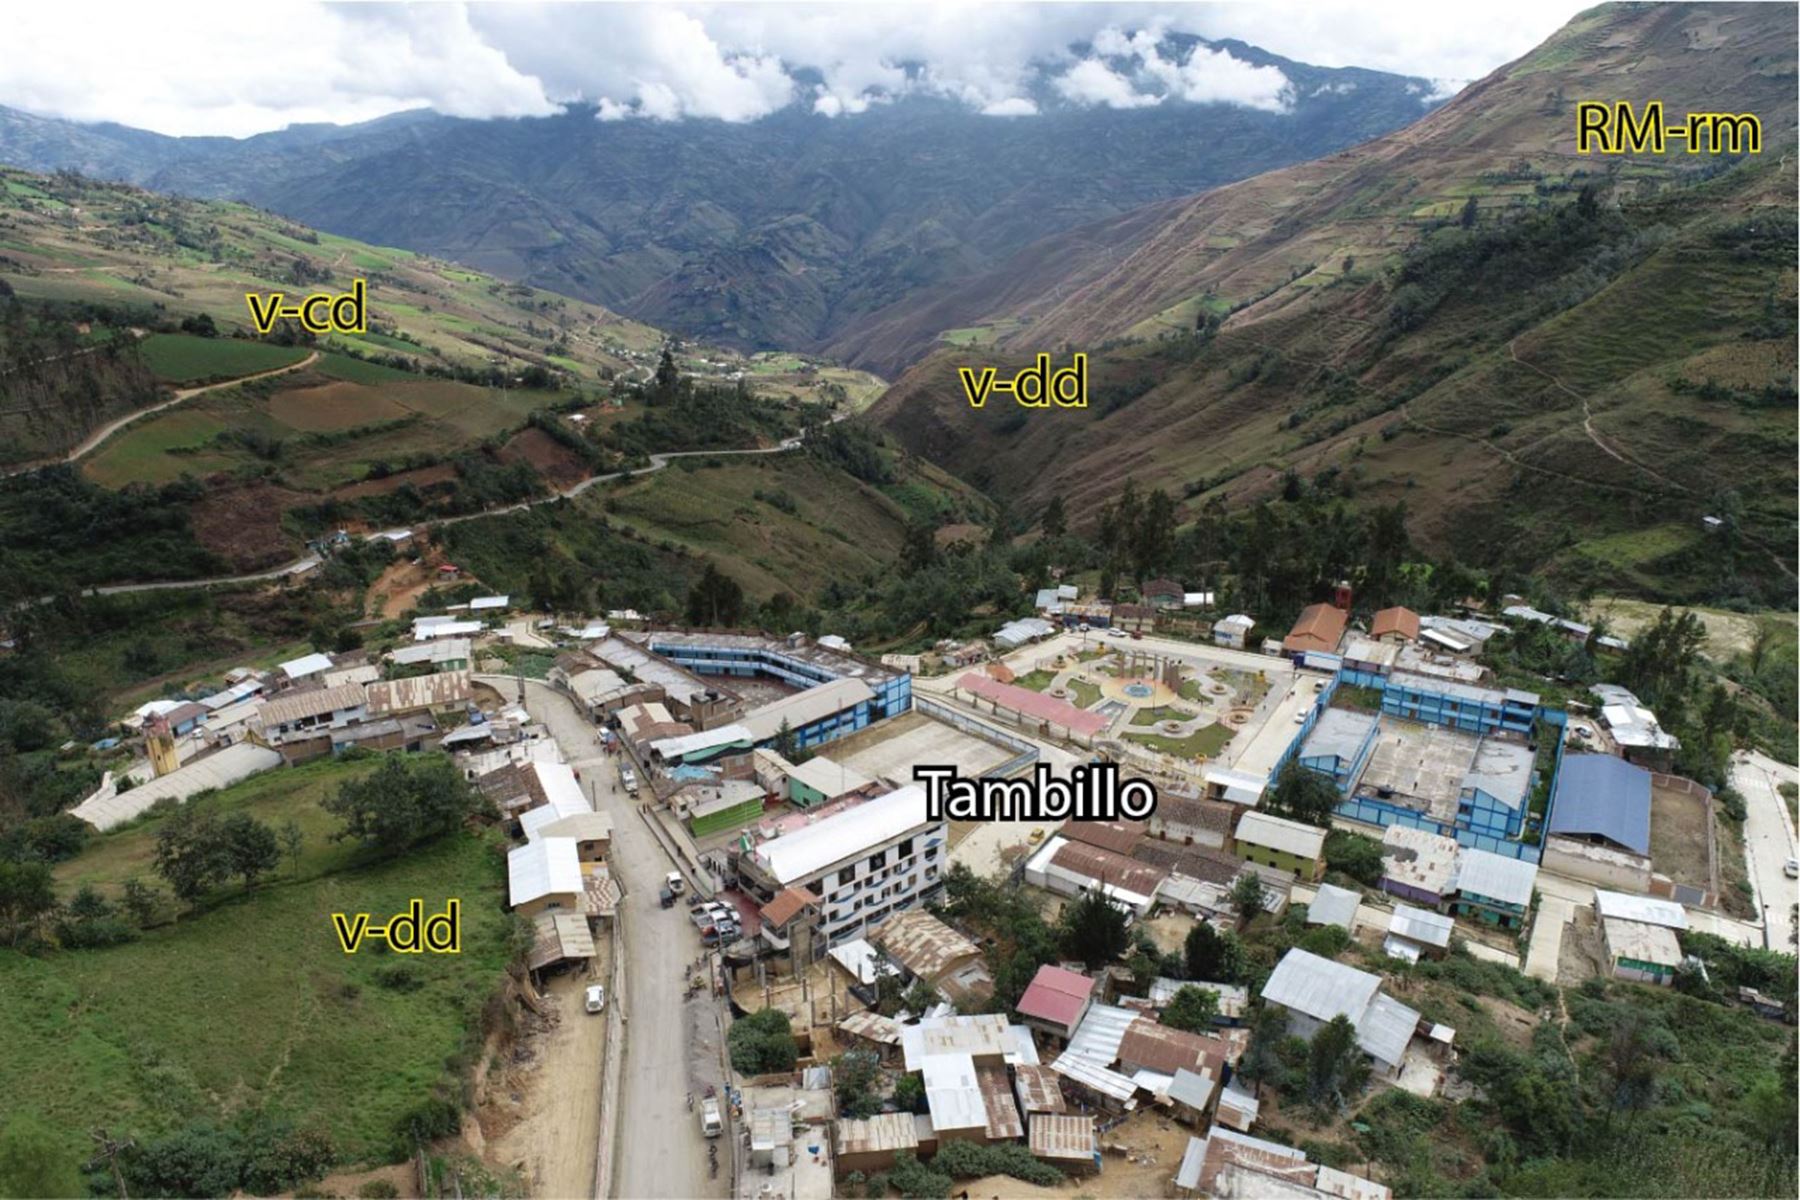 El Ingemmet hizo una evaluación de peligros geológicos por movimientos en masa en la vertiente sur de las quebradas Chinchinca y Panaococha, región Huánuco. Foto: ANDINA/Ingemmet